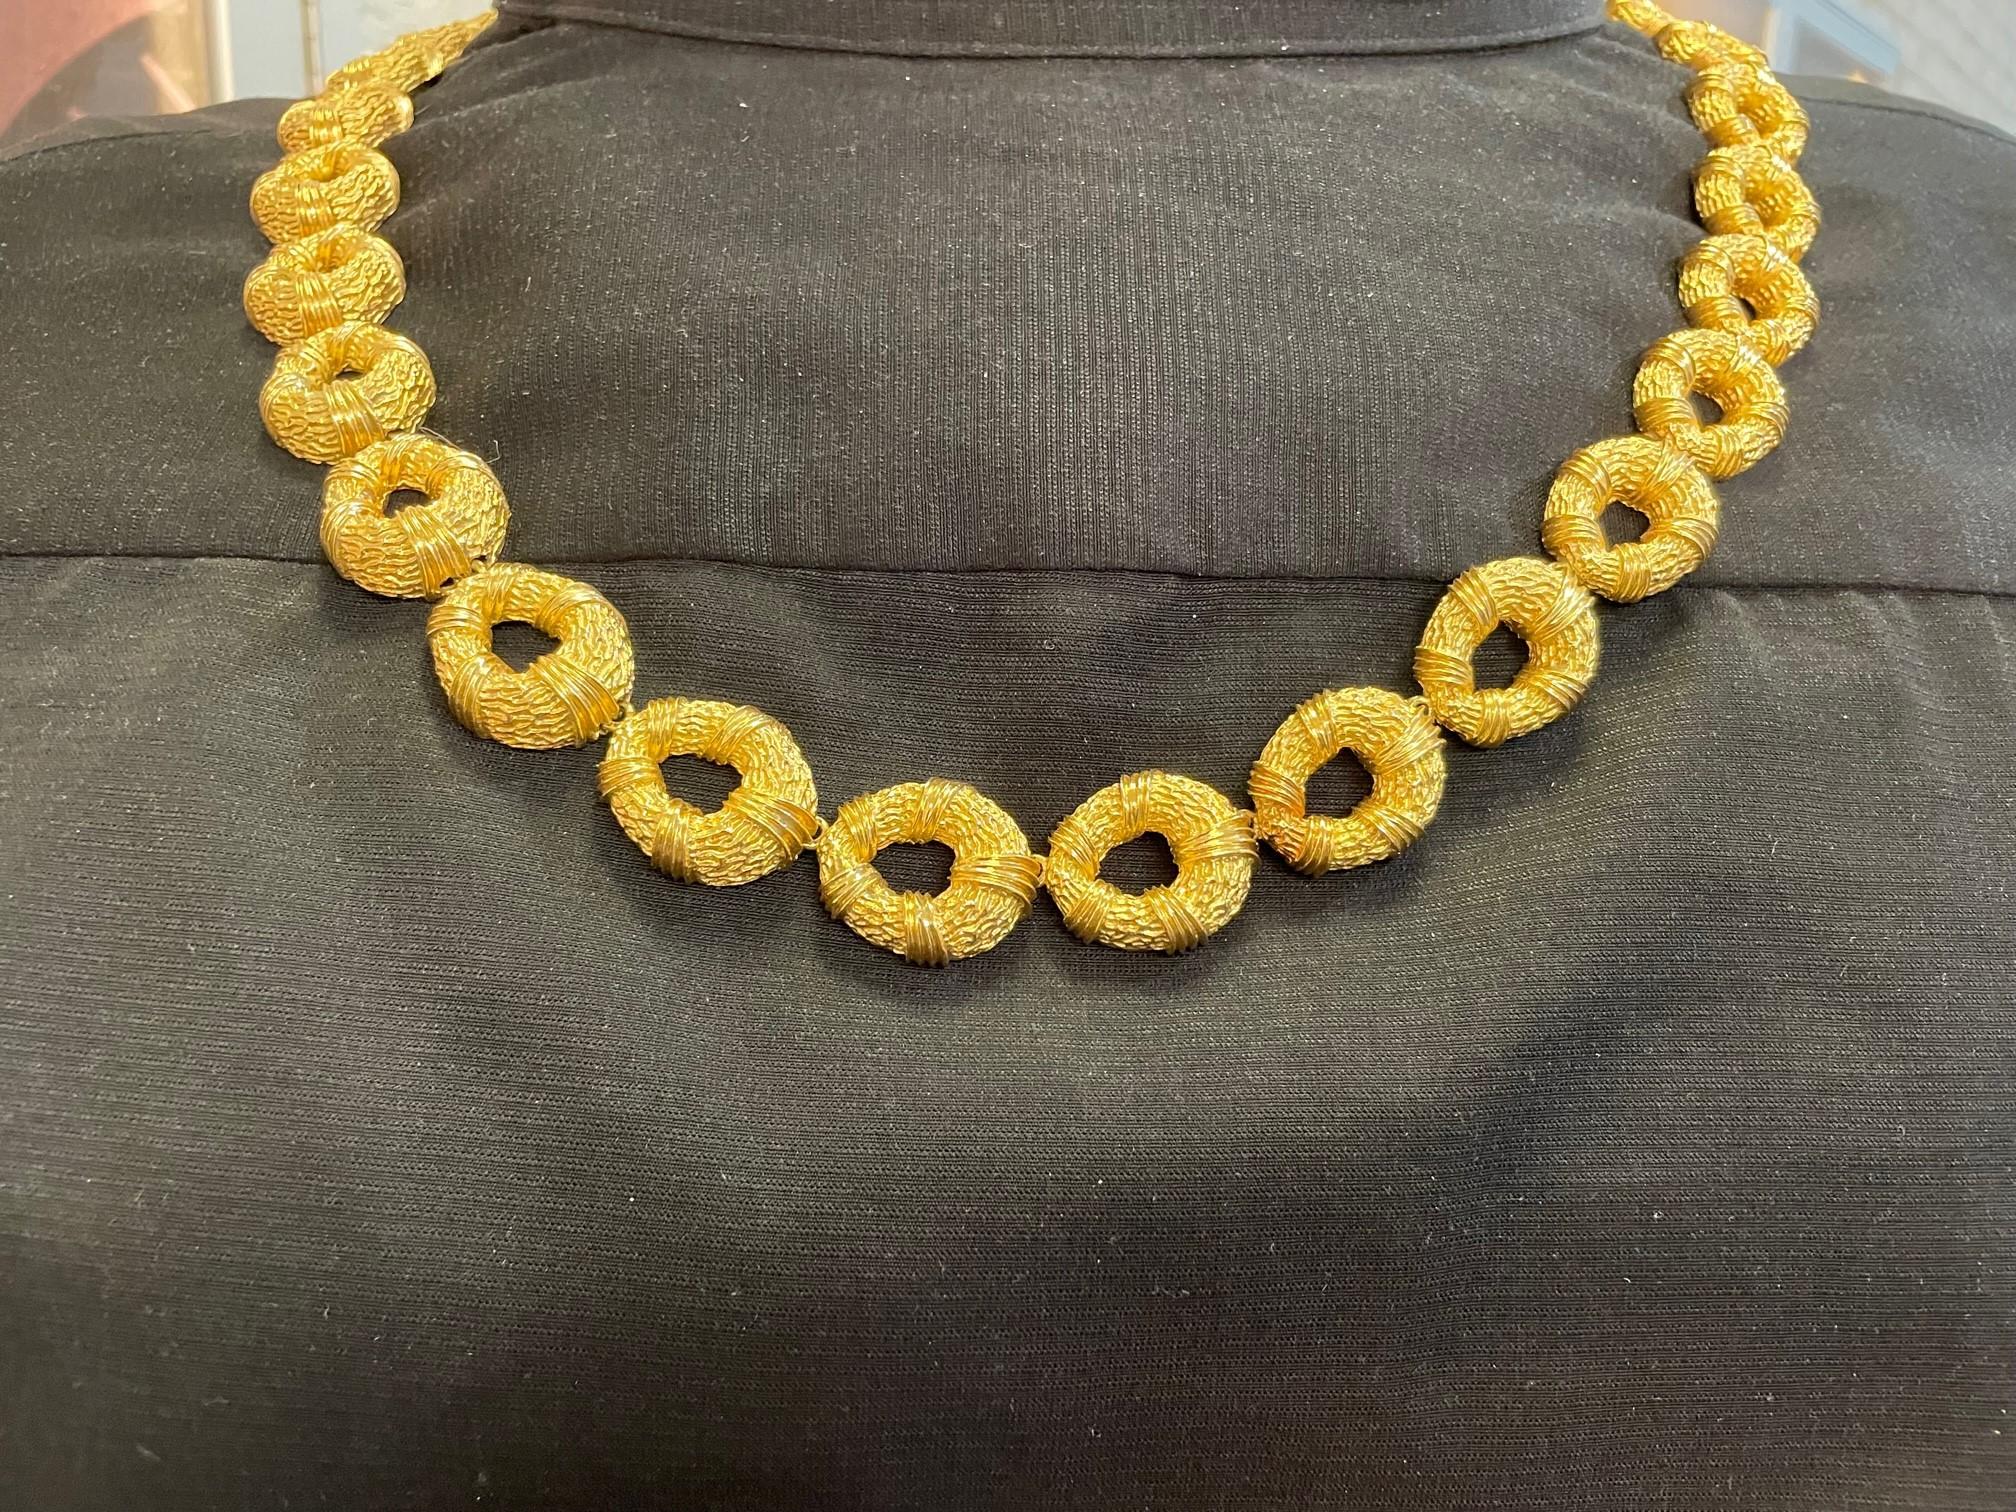 Vintage 18K Gelbgold 34 Zoll ovale Link Halskette.  Die Halskette hat eine Box
Schließe und einer strukturierten Oberfläche.  Die Halskette wiegt 186 Gramm, ca. 1970er Jahre. 